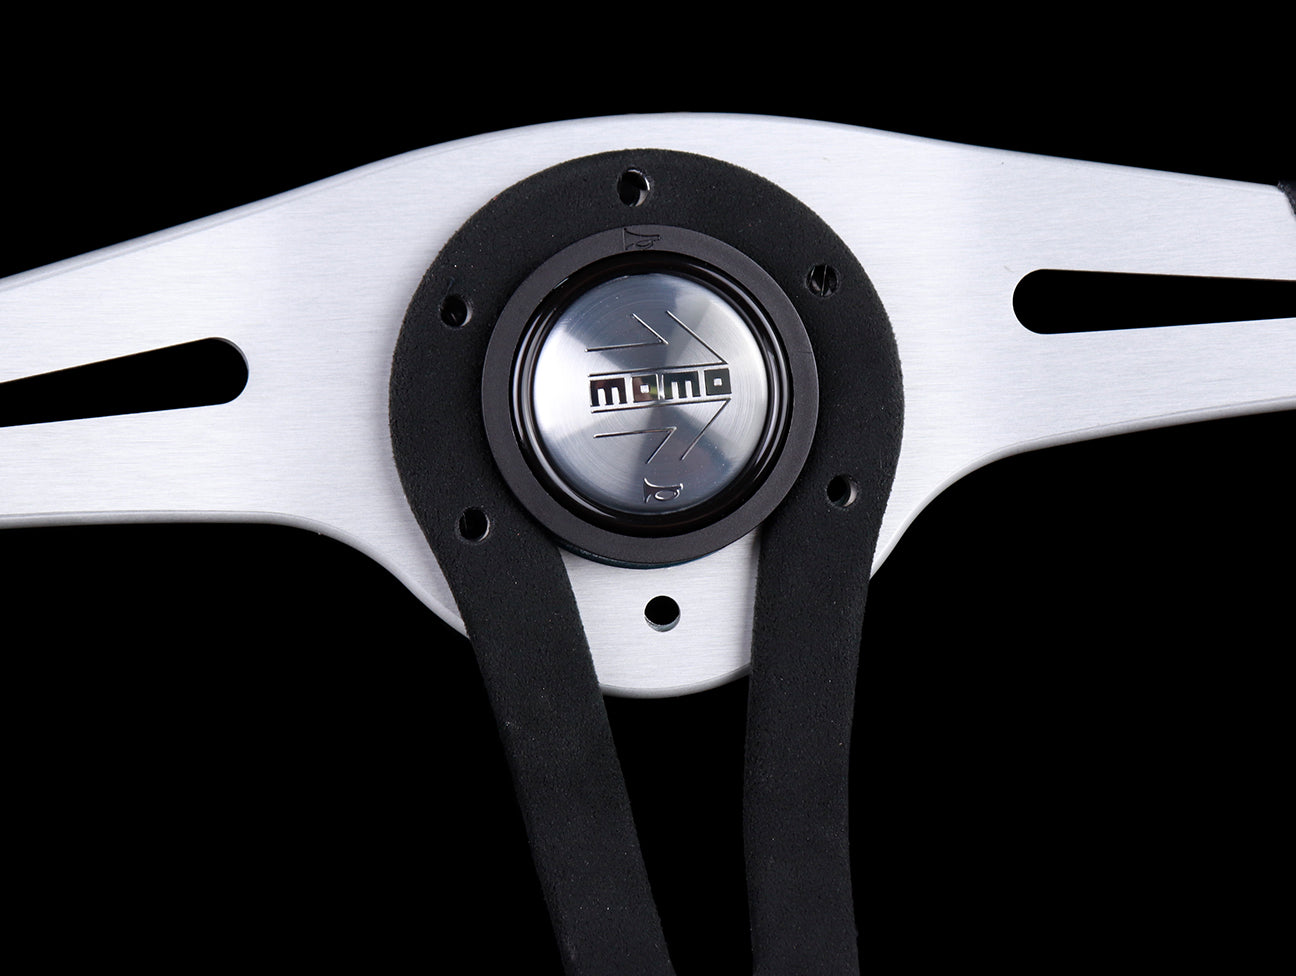 Momo Trek 350mm Steering Wheel - Black